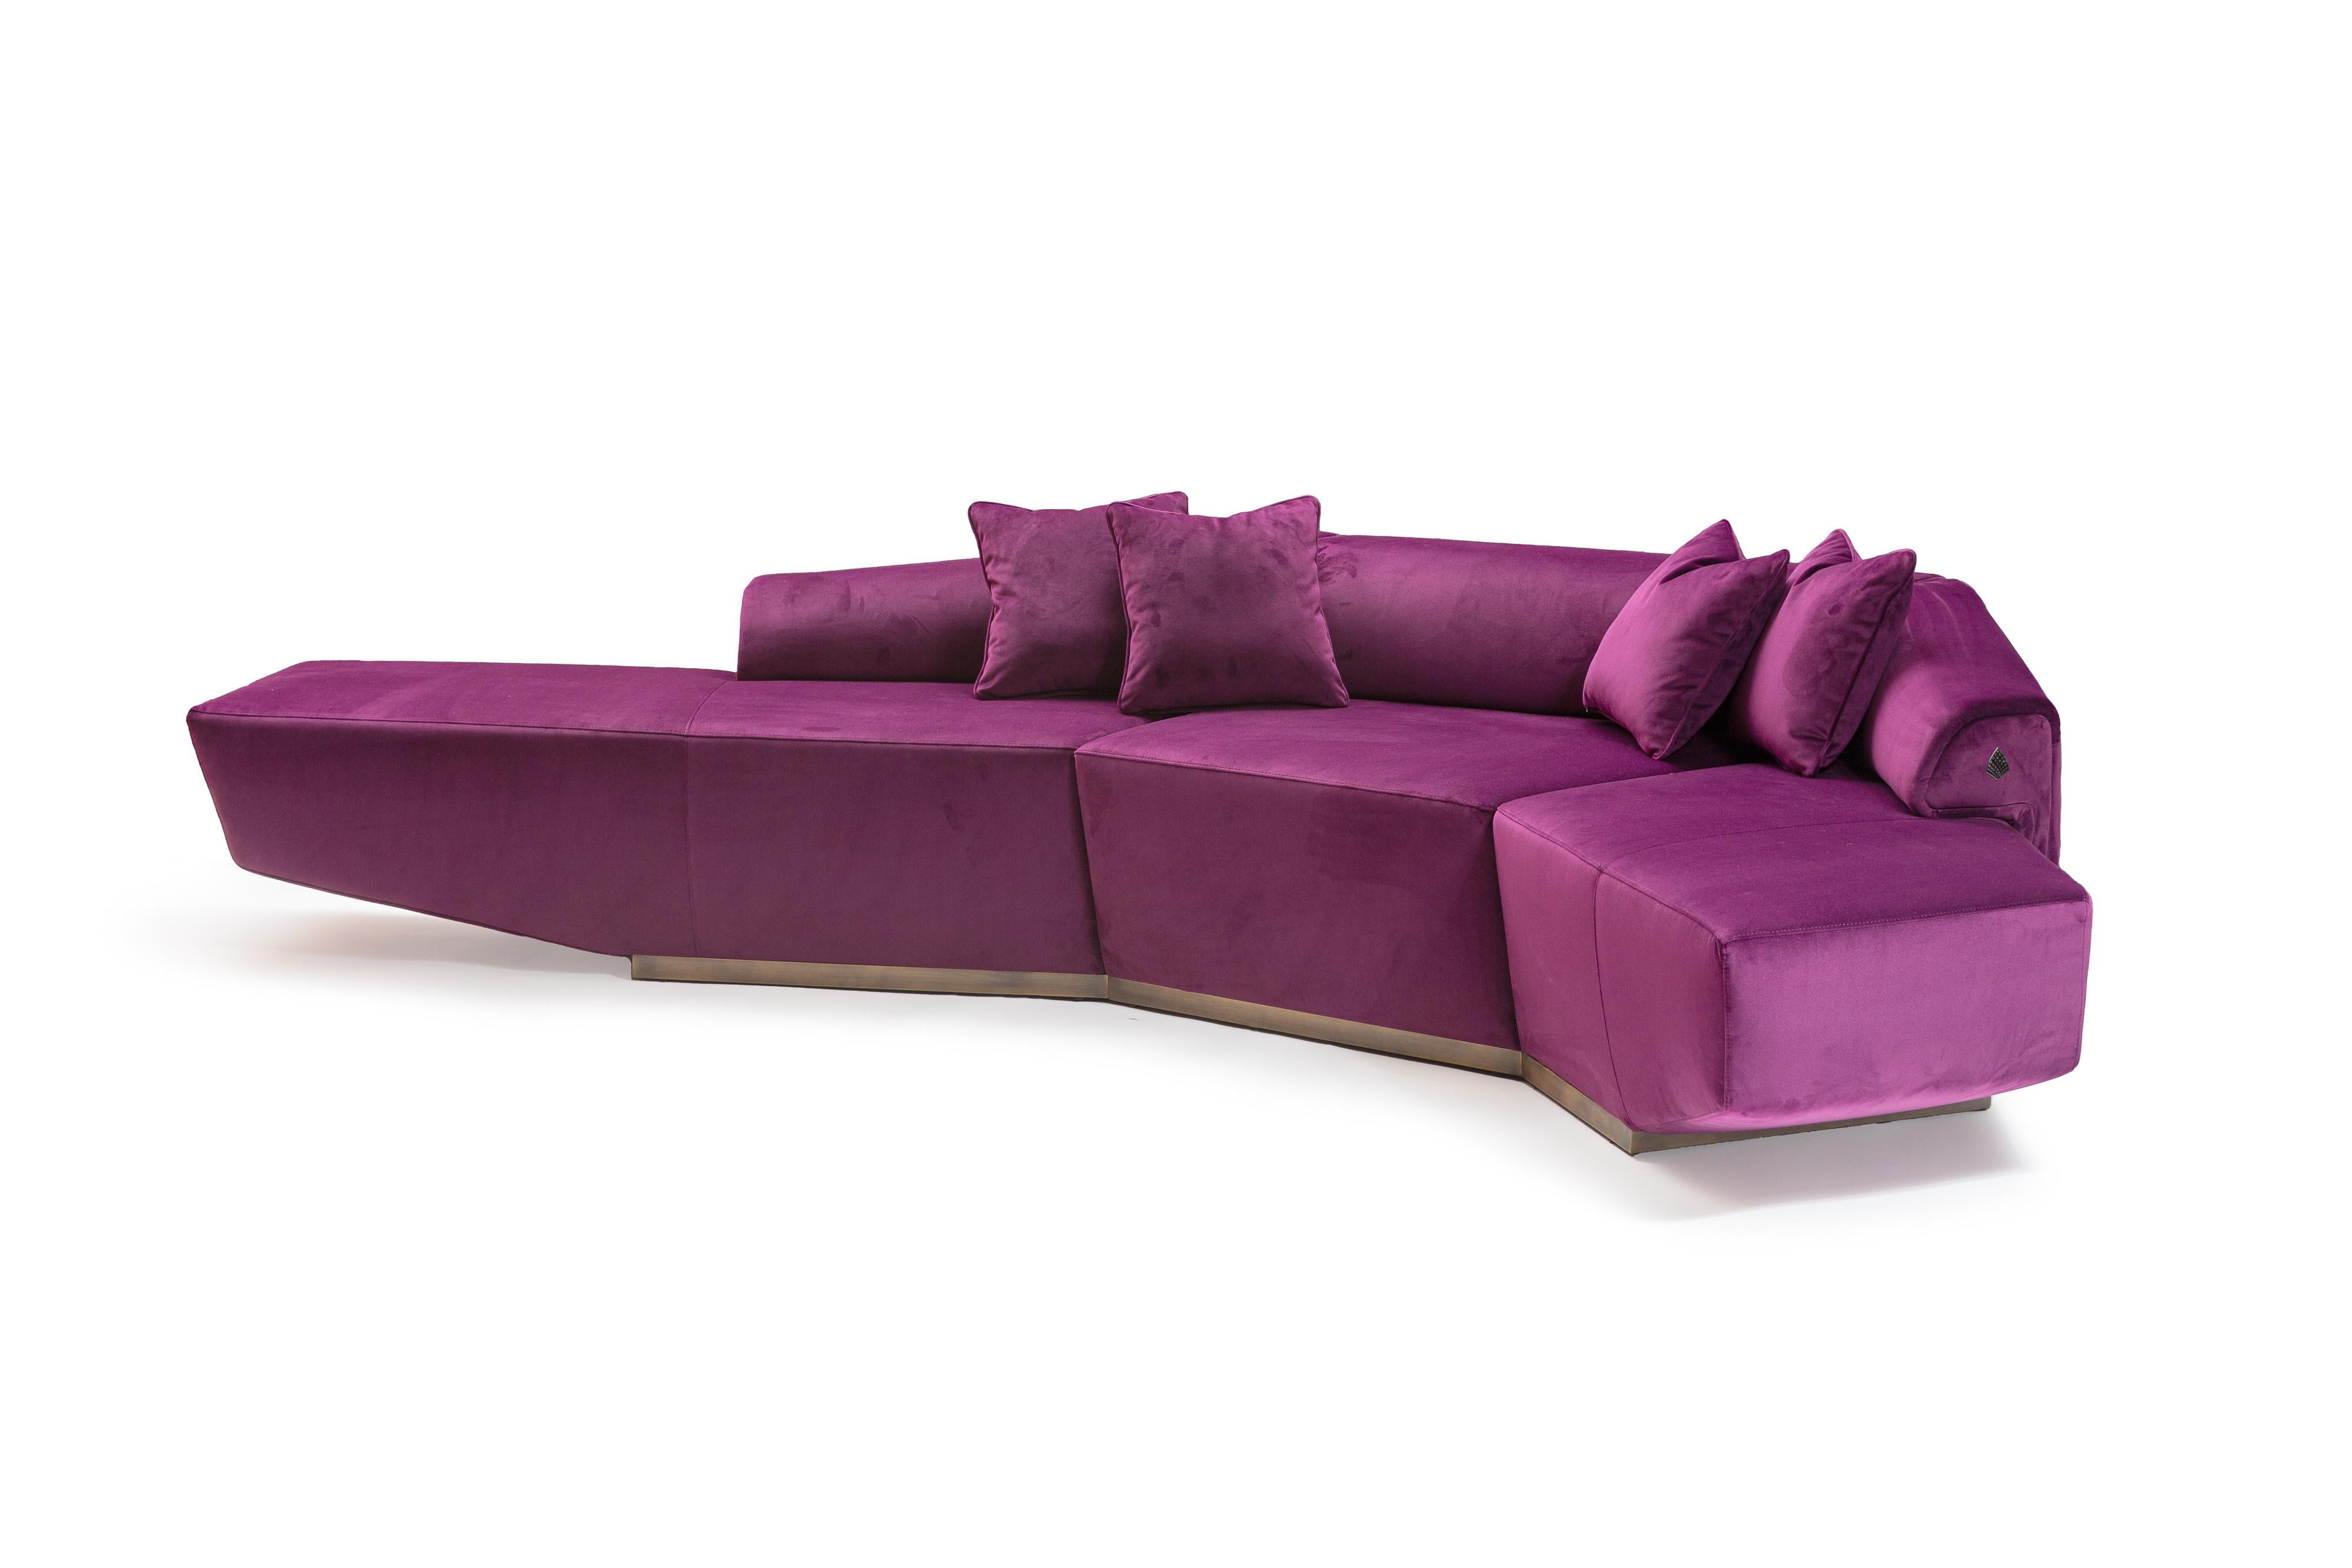 Il divano Dubhè, unico nel suo genere, è un pezzo molto richiesto. Il divano i cui fianchi sono sollevati da terra, è il punto forte della collezione Supernova. Disponibile in velluto viola, è l'oggeto giusto e accattivante per un prodotto che